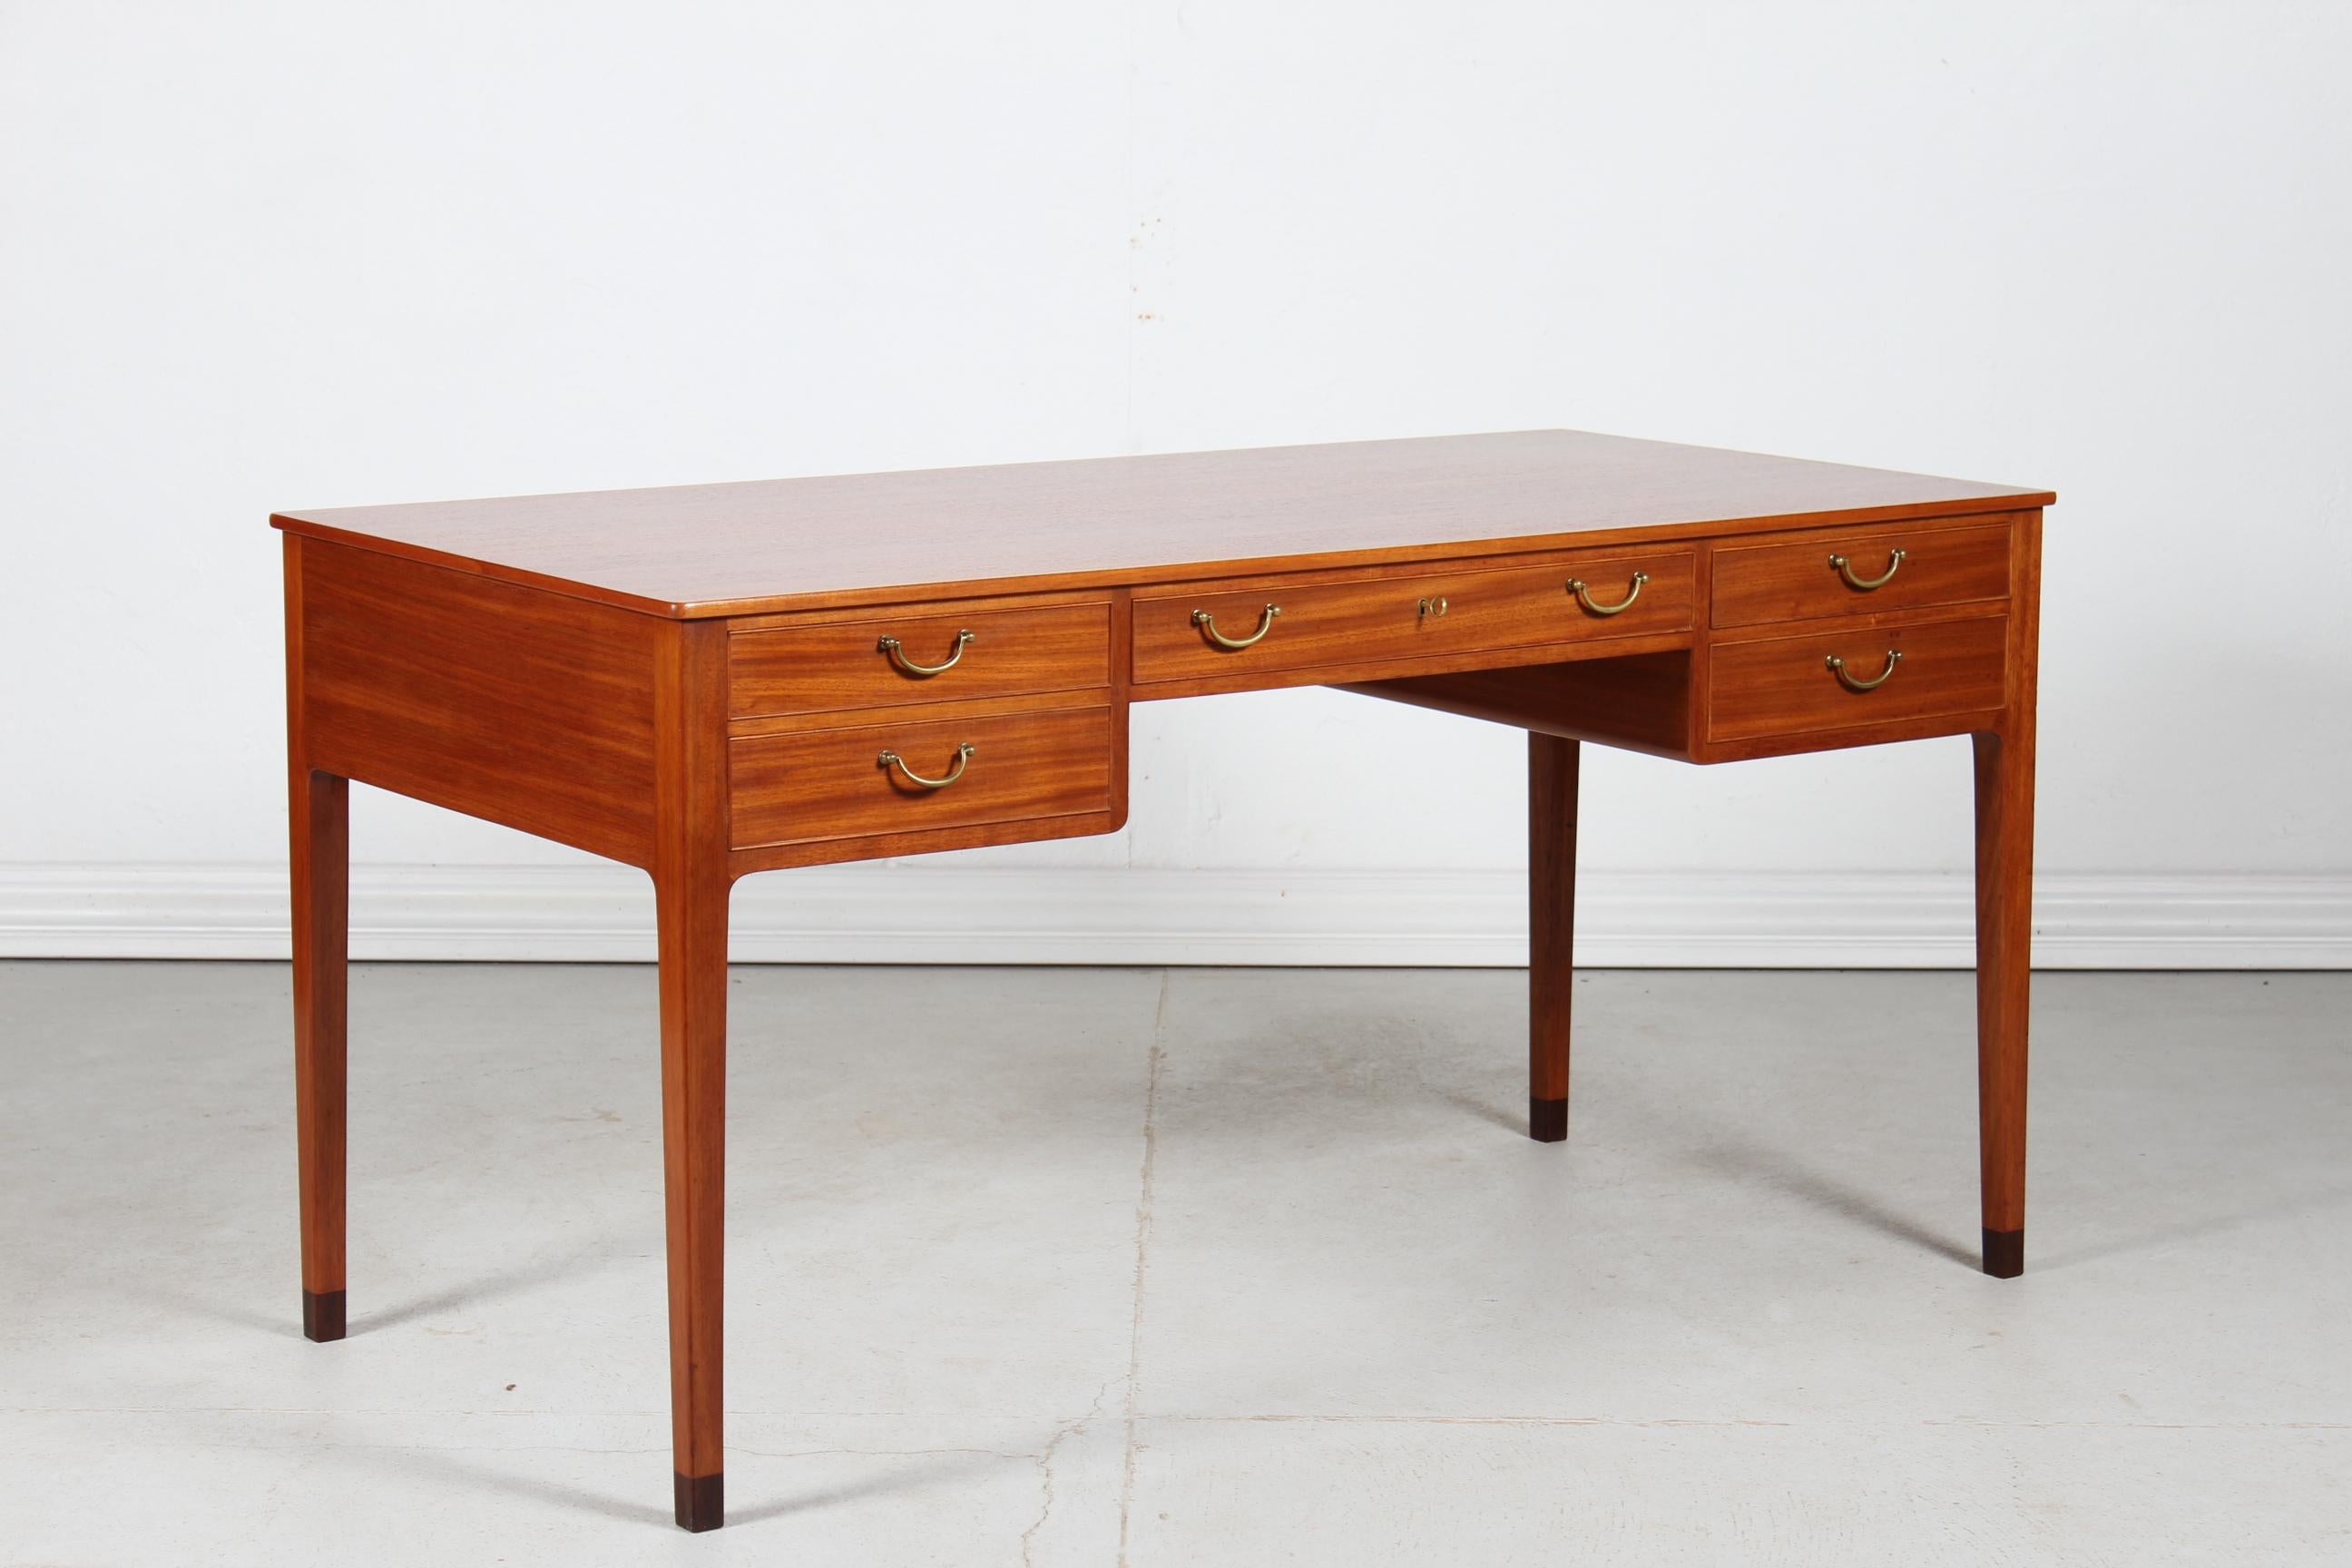 Freistehendes Schreibpult mit 5 Schubladen, entworfen von Ole Wanscher (1903-1985).
Der Schreibtisch ist aus lackiertem Mahagoni mit einem Innenrahmen aus Eichenholz gefertigt. 
Die Griffe sind aus massivem Messing und die originalen Beinenden sind